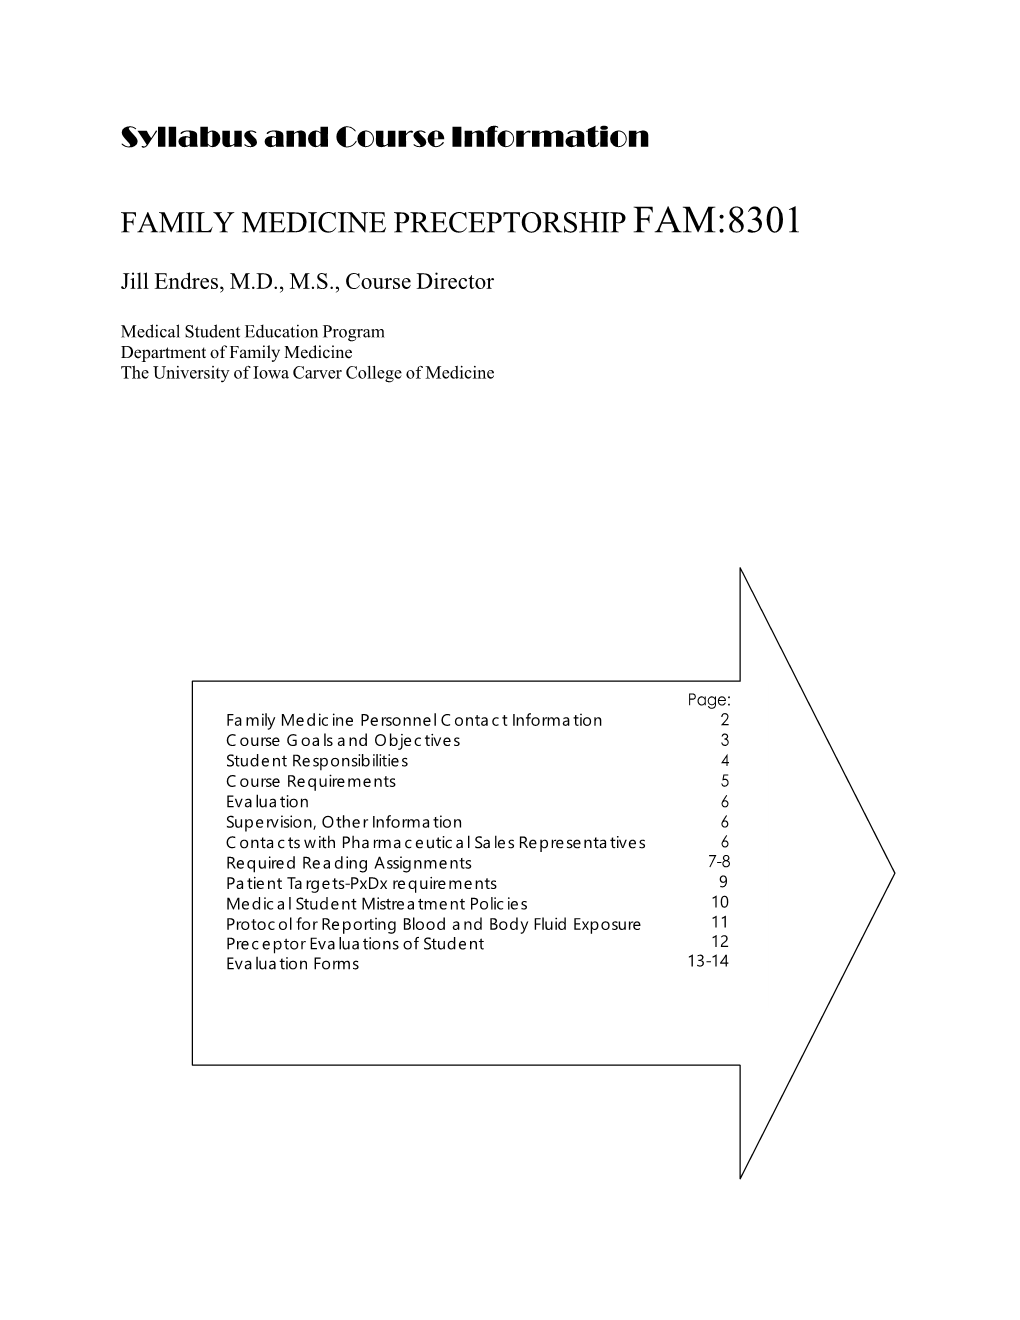 SYLLABUS and COURSE INFORMATION Family Medicine Preceptorship FAM:8301